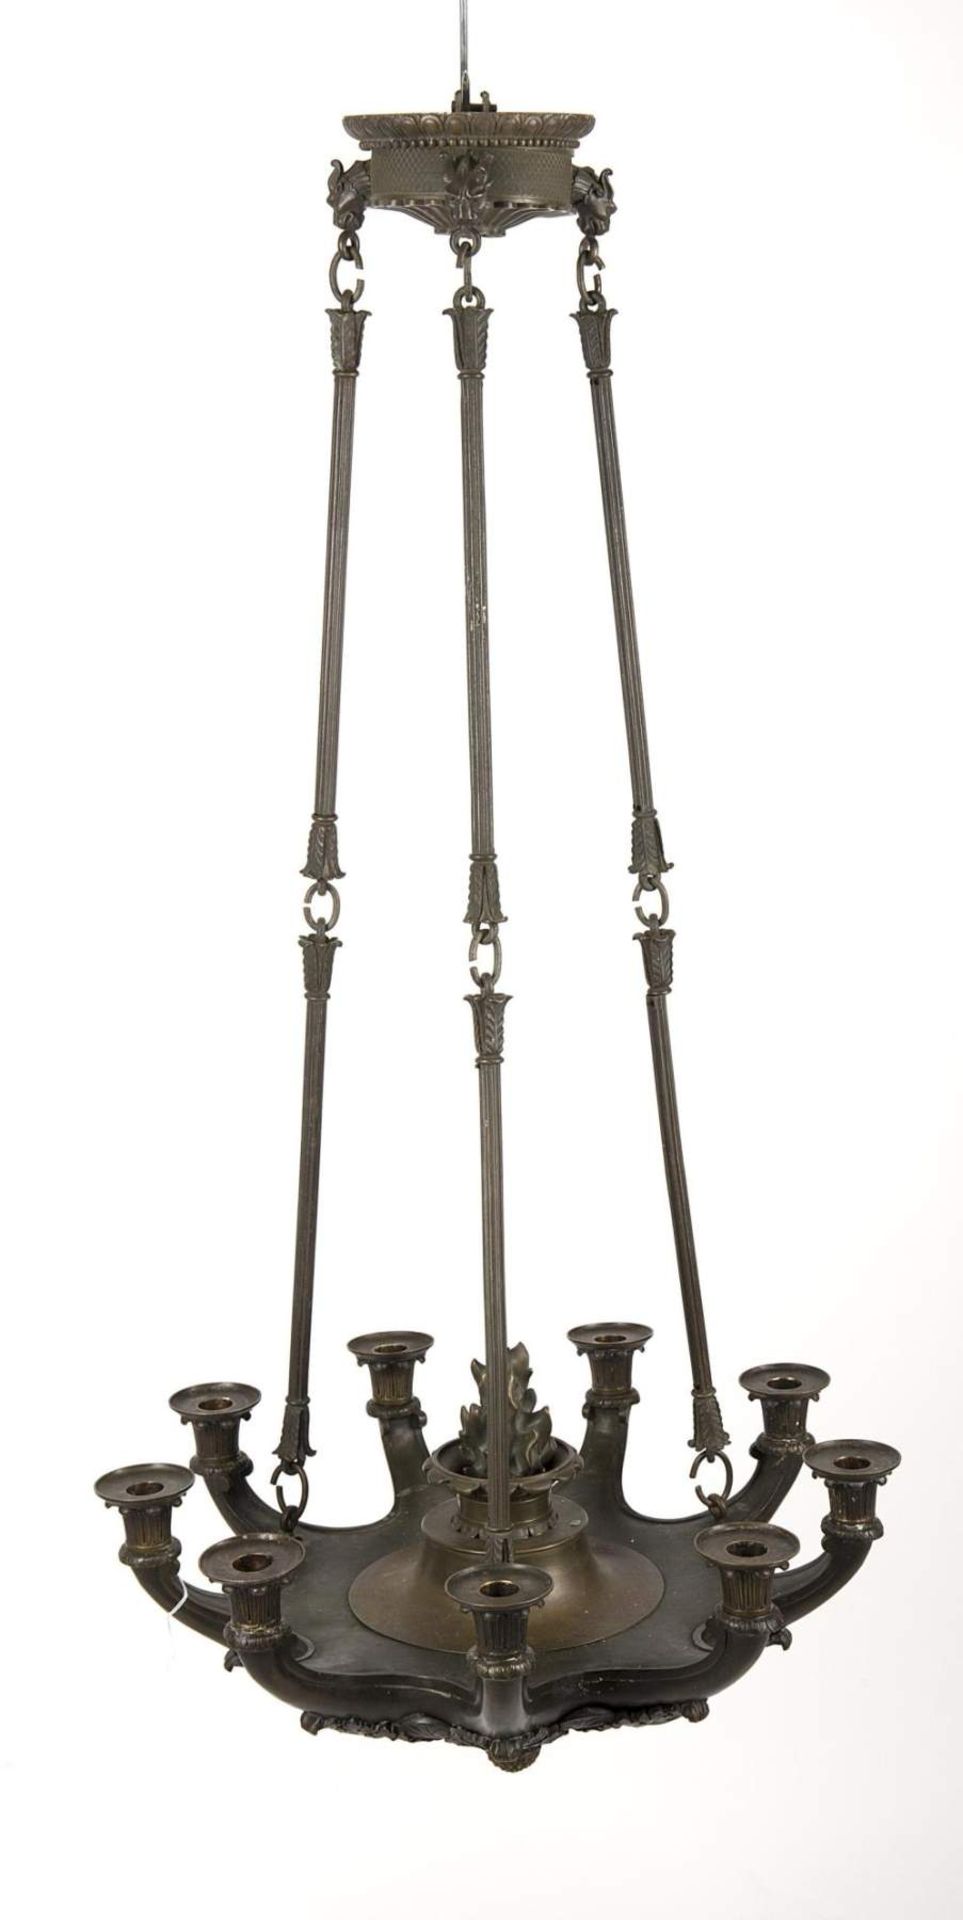 lustre en bronze à patine noire d'époque Empire à 9 feux

D. 58 cm
 
Provenance: Château de